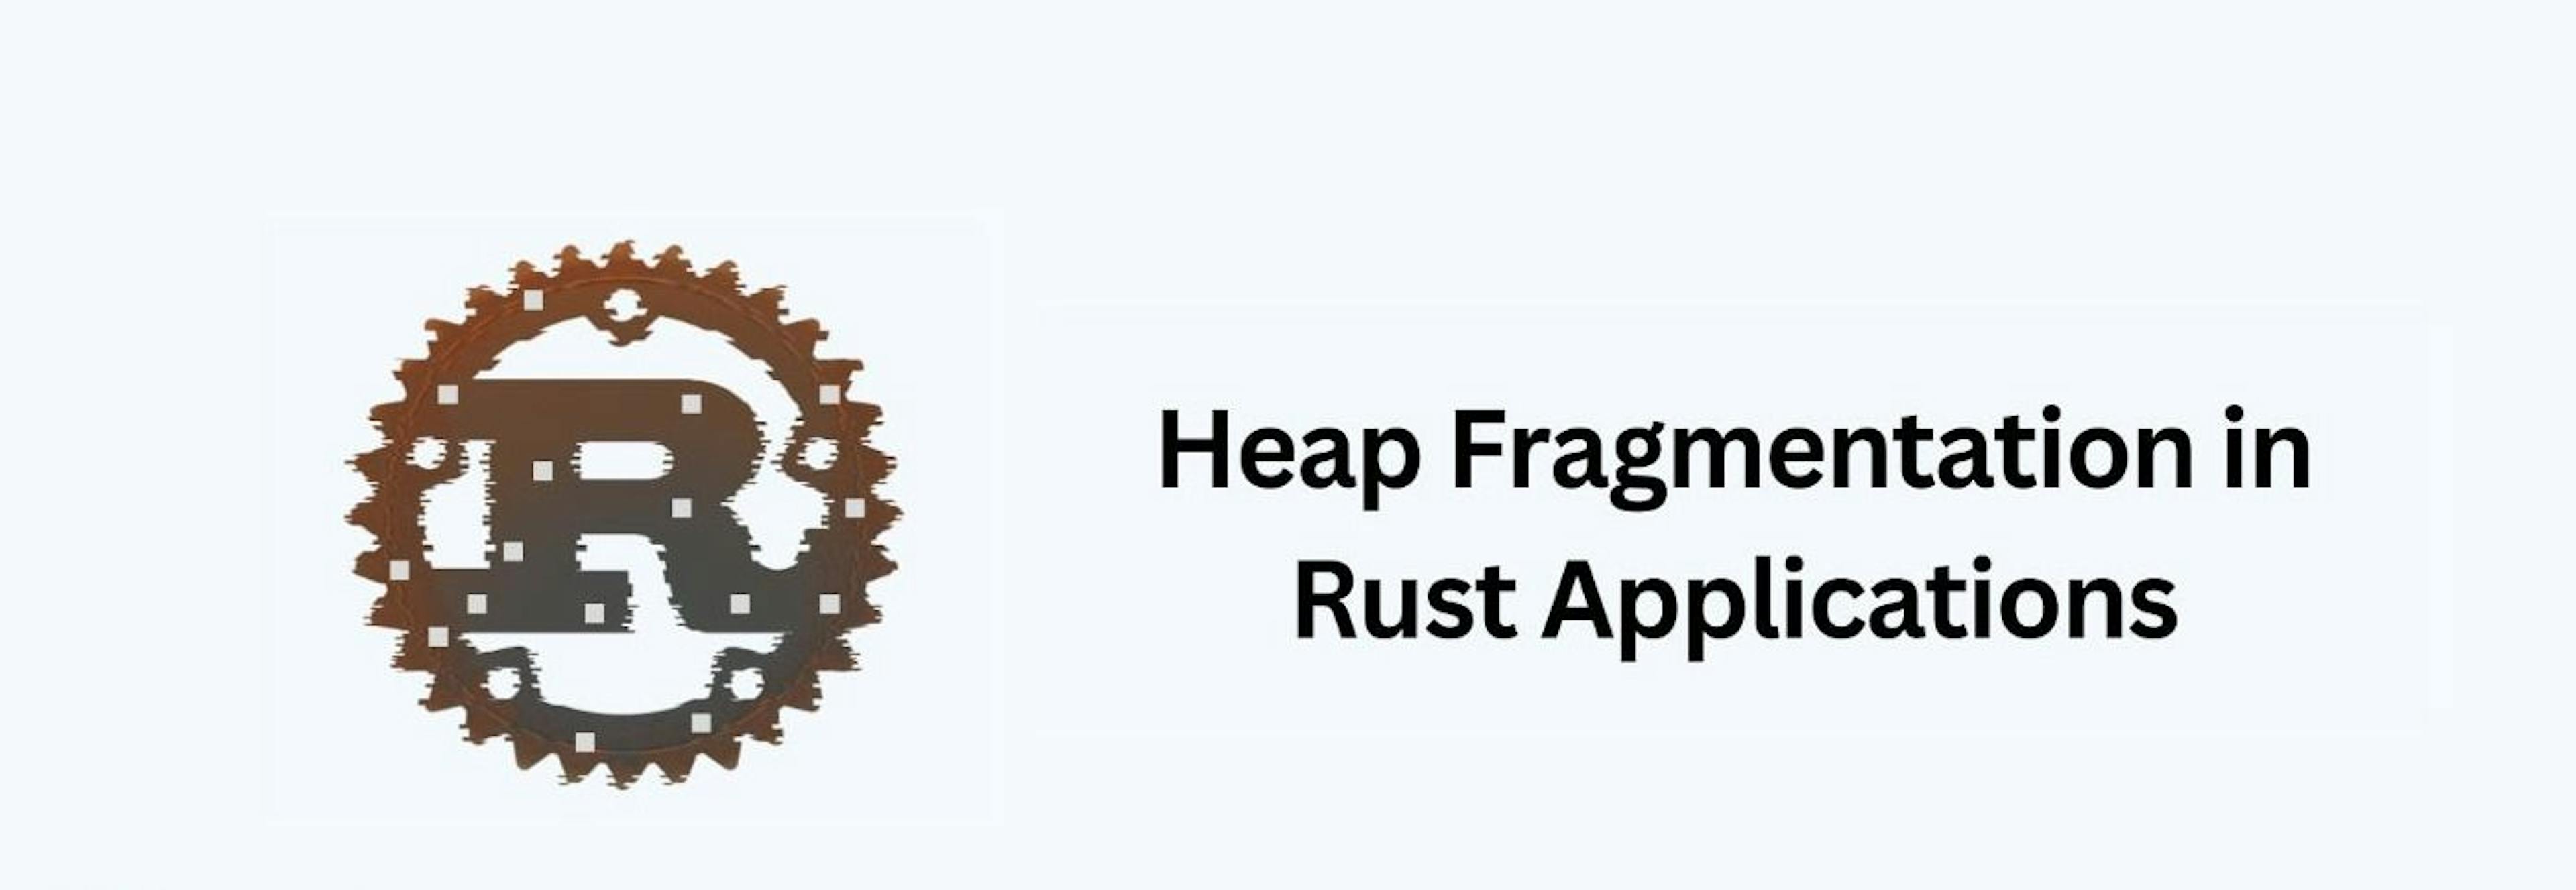 featured image - Cómo detectar y evitar la fragmentación del montón en aplicaciones de Rust